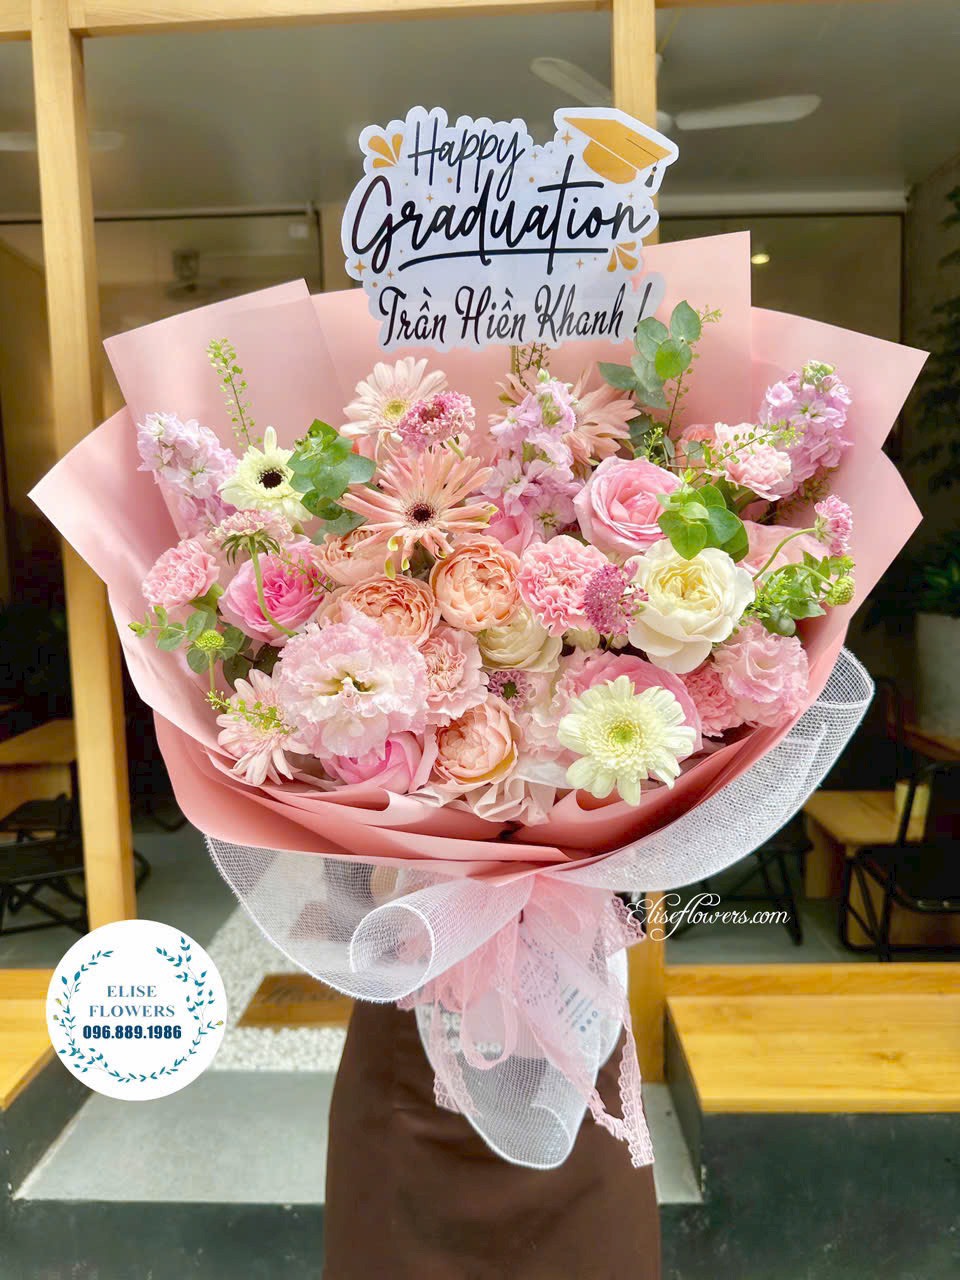 Bó hoa tặng tốt nghiệp đẹp ở Hà Nội. Đặt mua bó hoa tặng tốt nghiệp đẹp